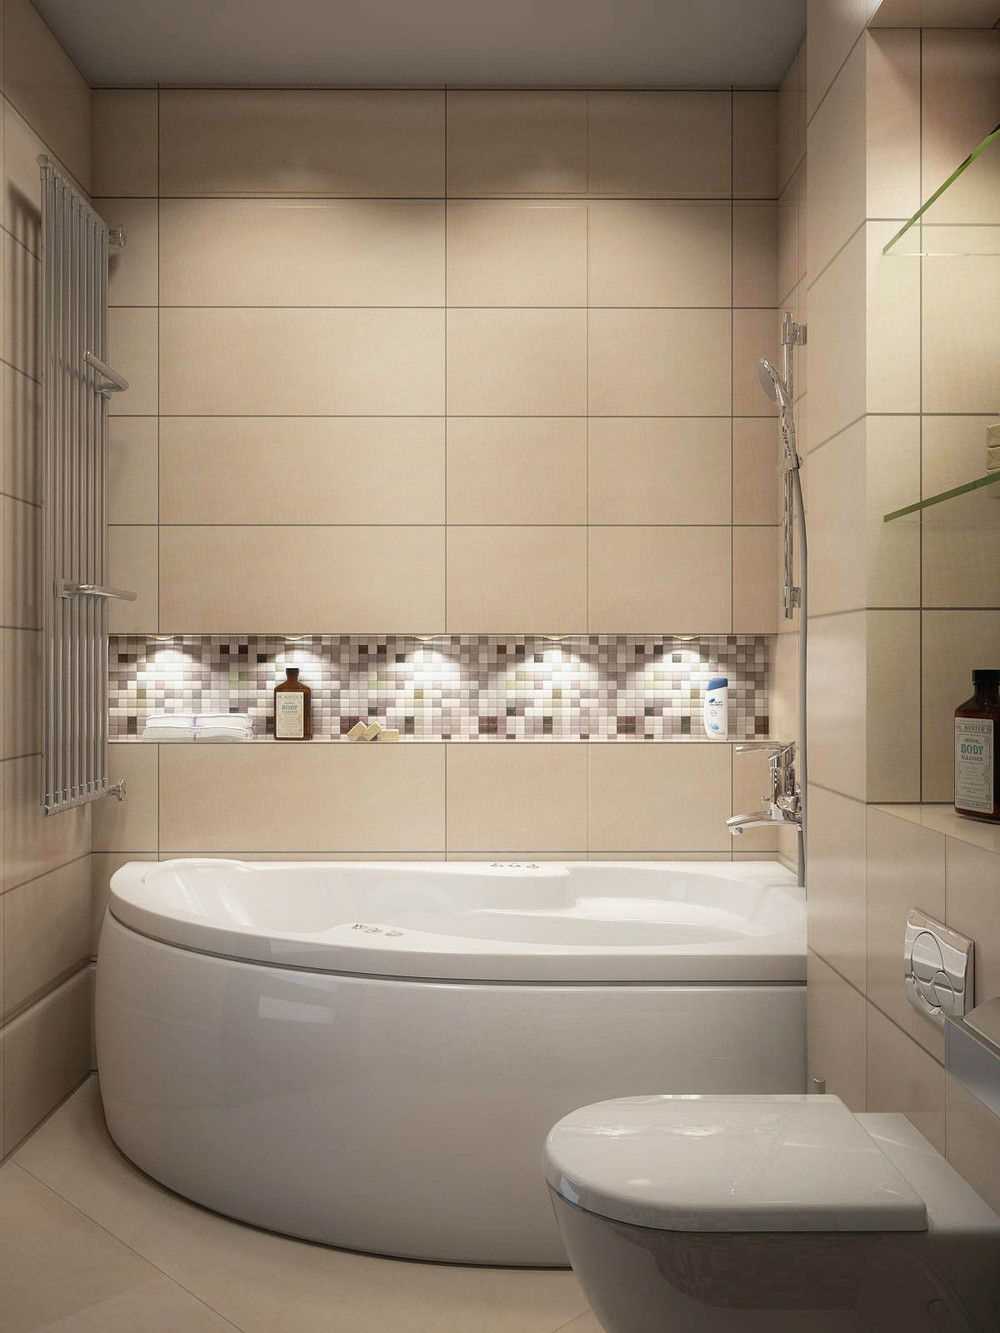 2017 neįprasta vonios kambario idėja